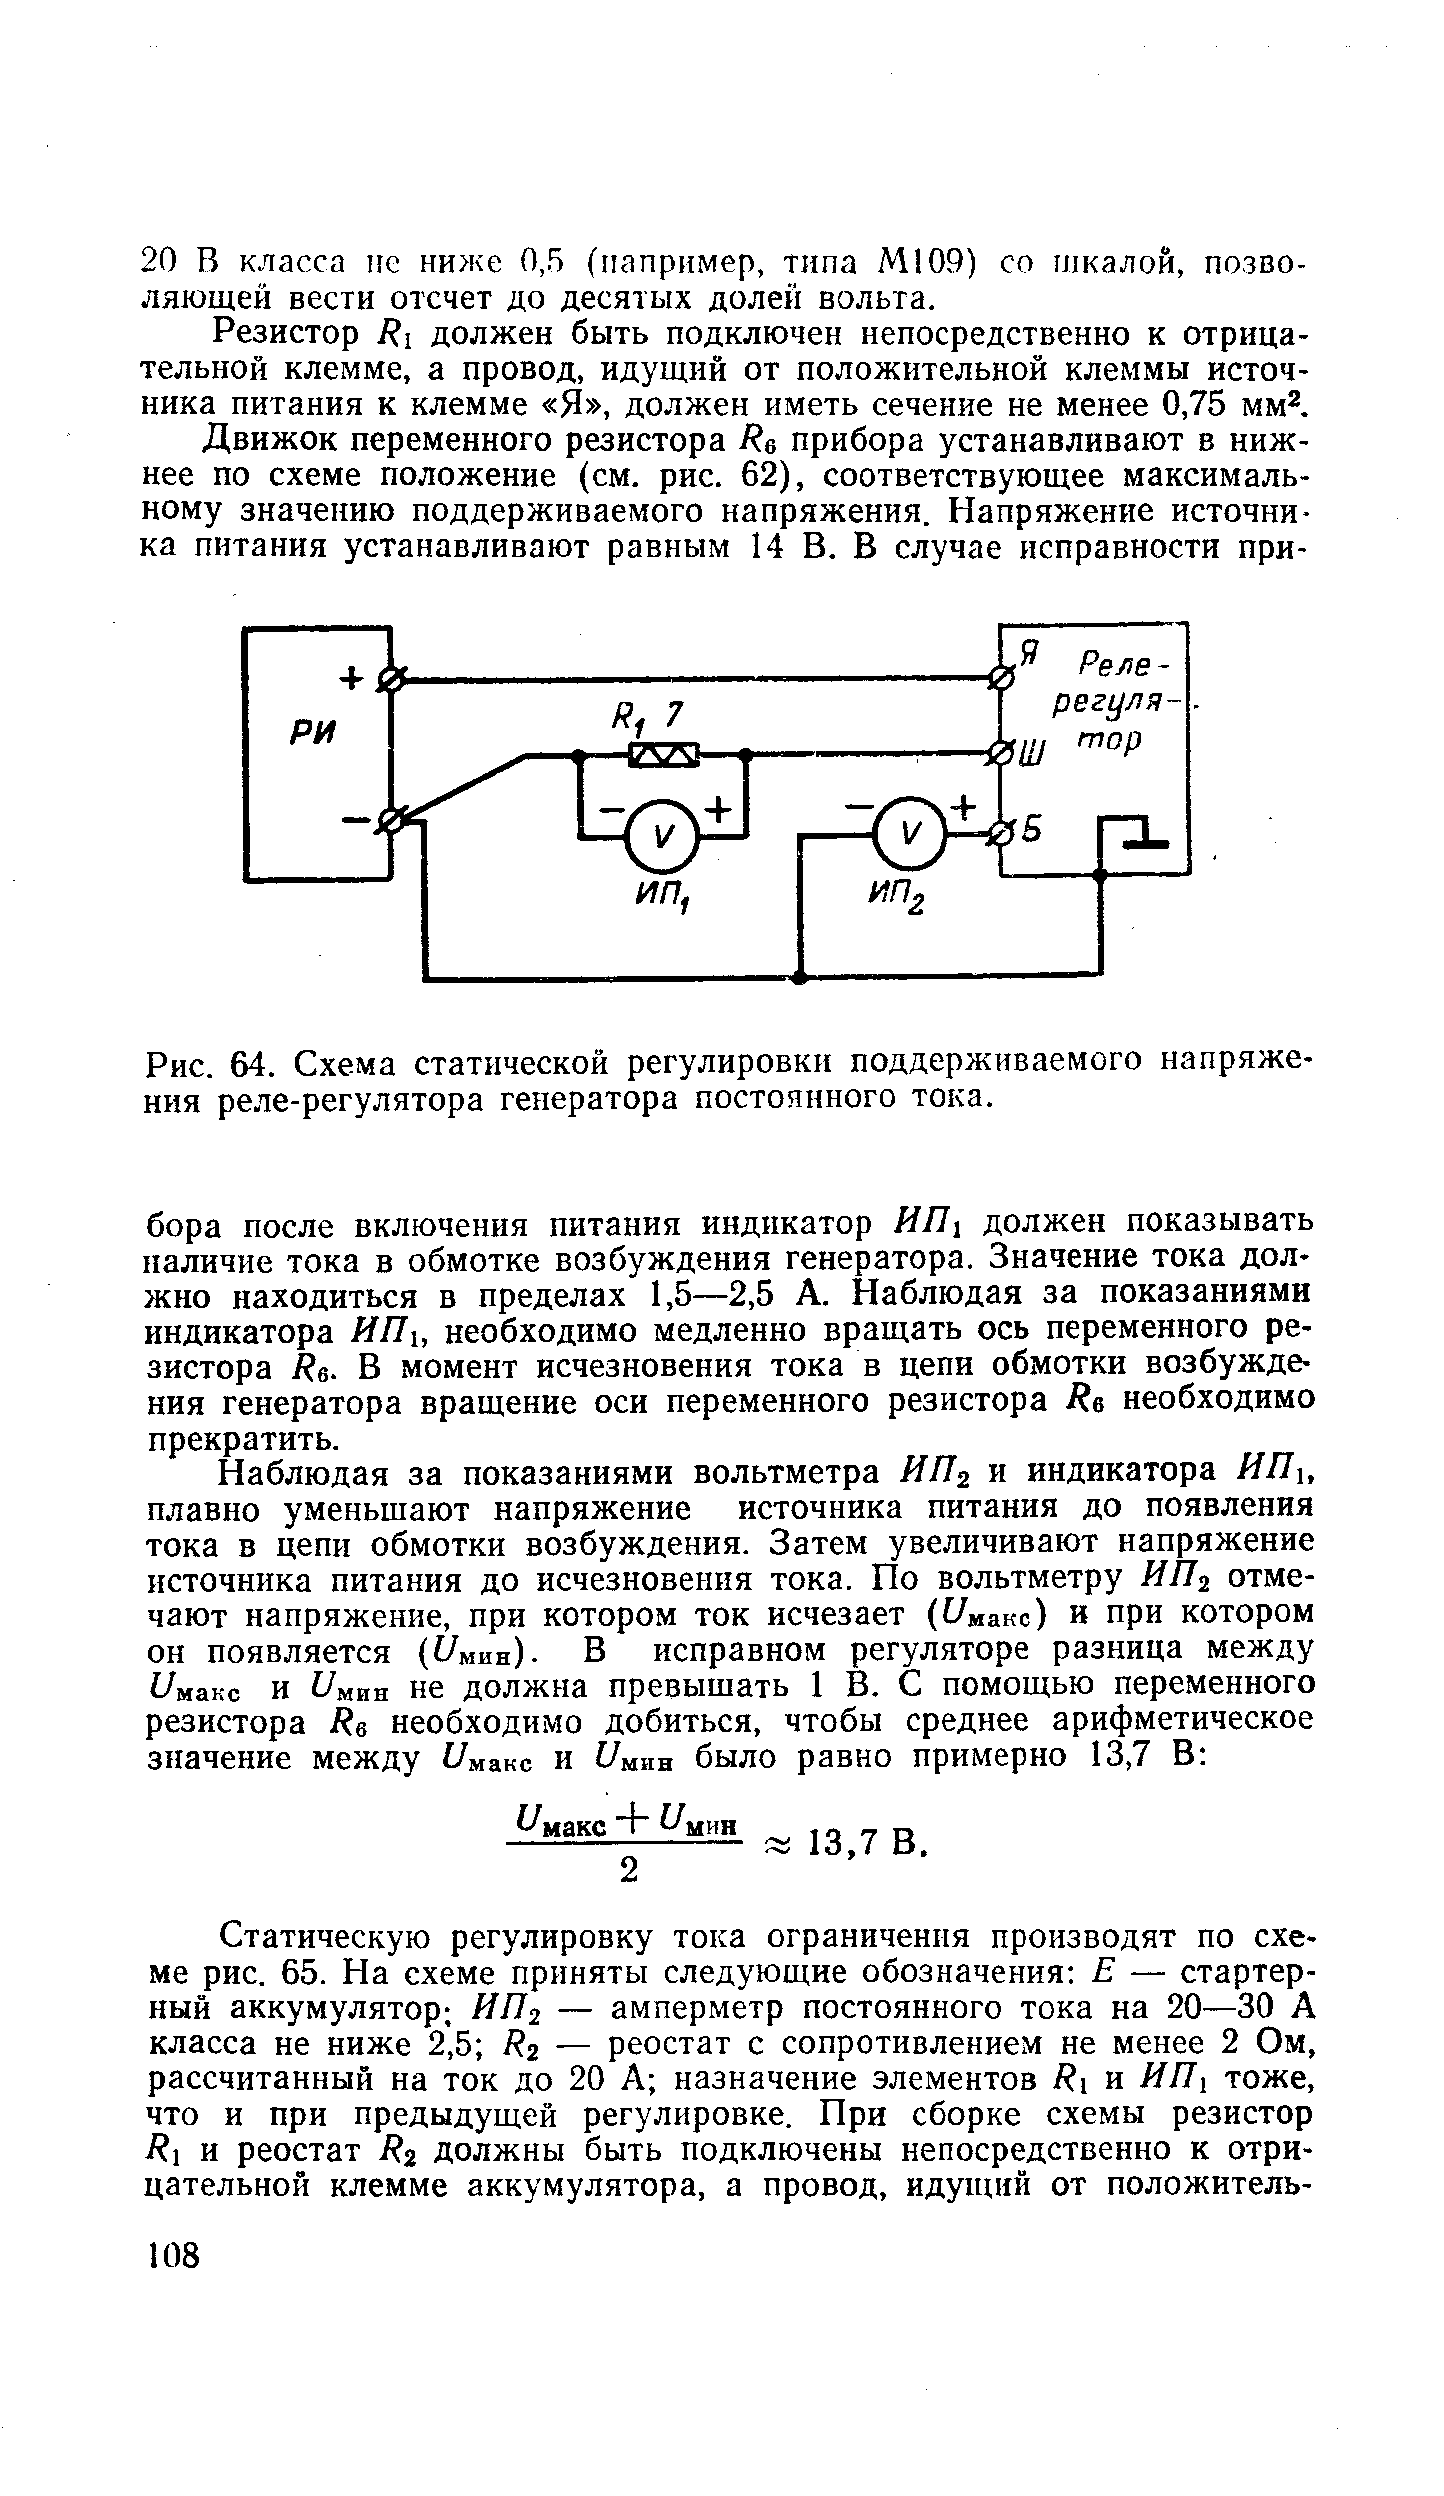 Рис. 64. Схема статической регулировки поддерживаемого <a href="/info/508259">напряжения реле-регулятора генератора</a> постоянного тока.
